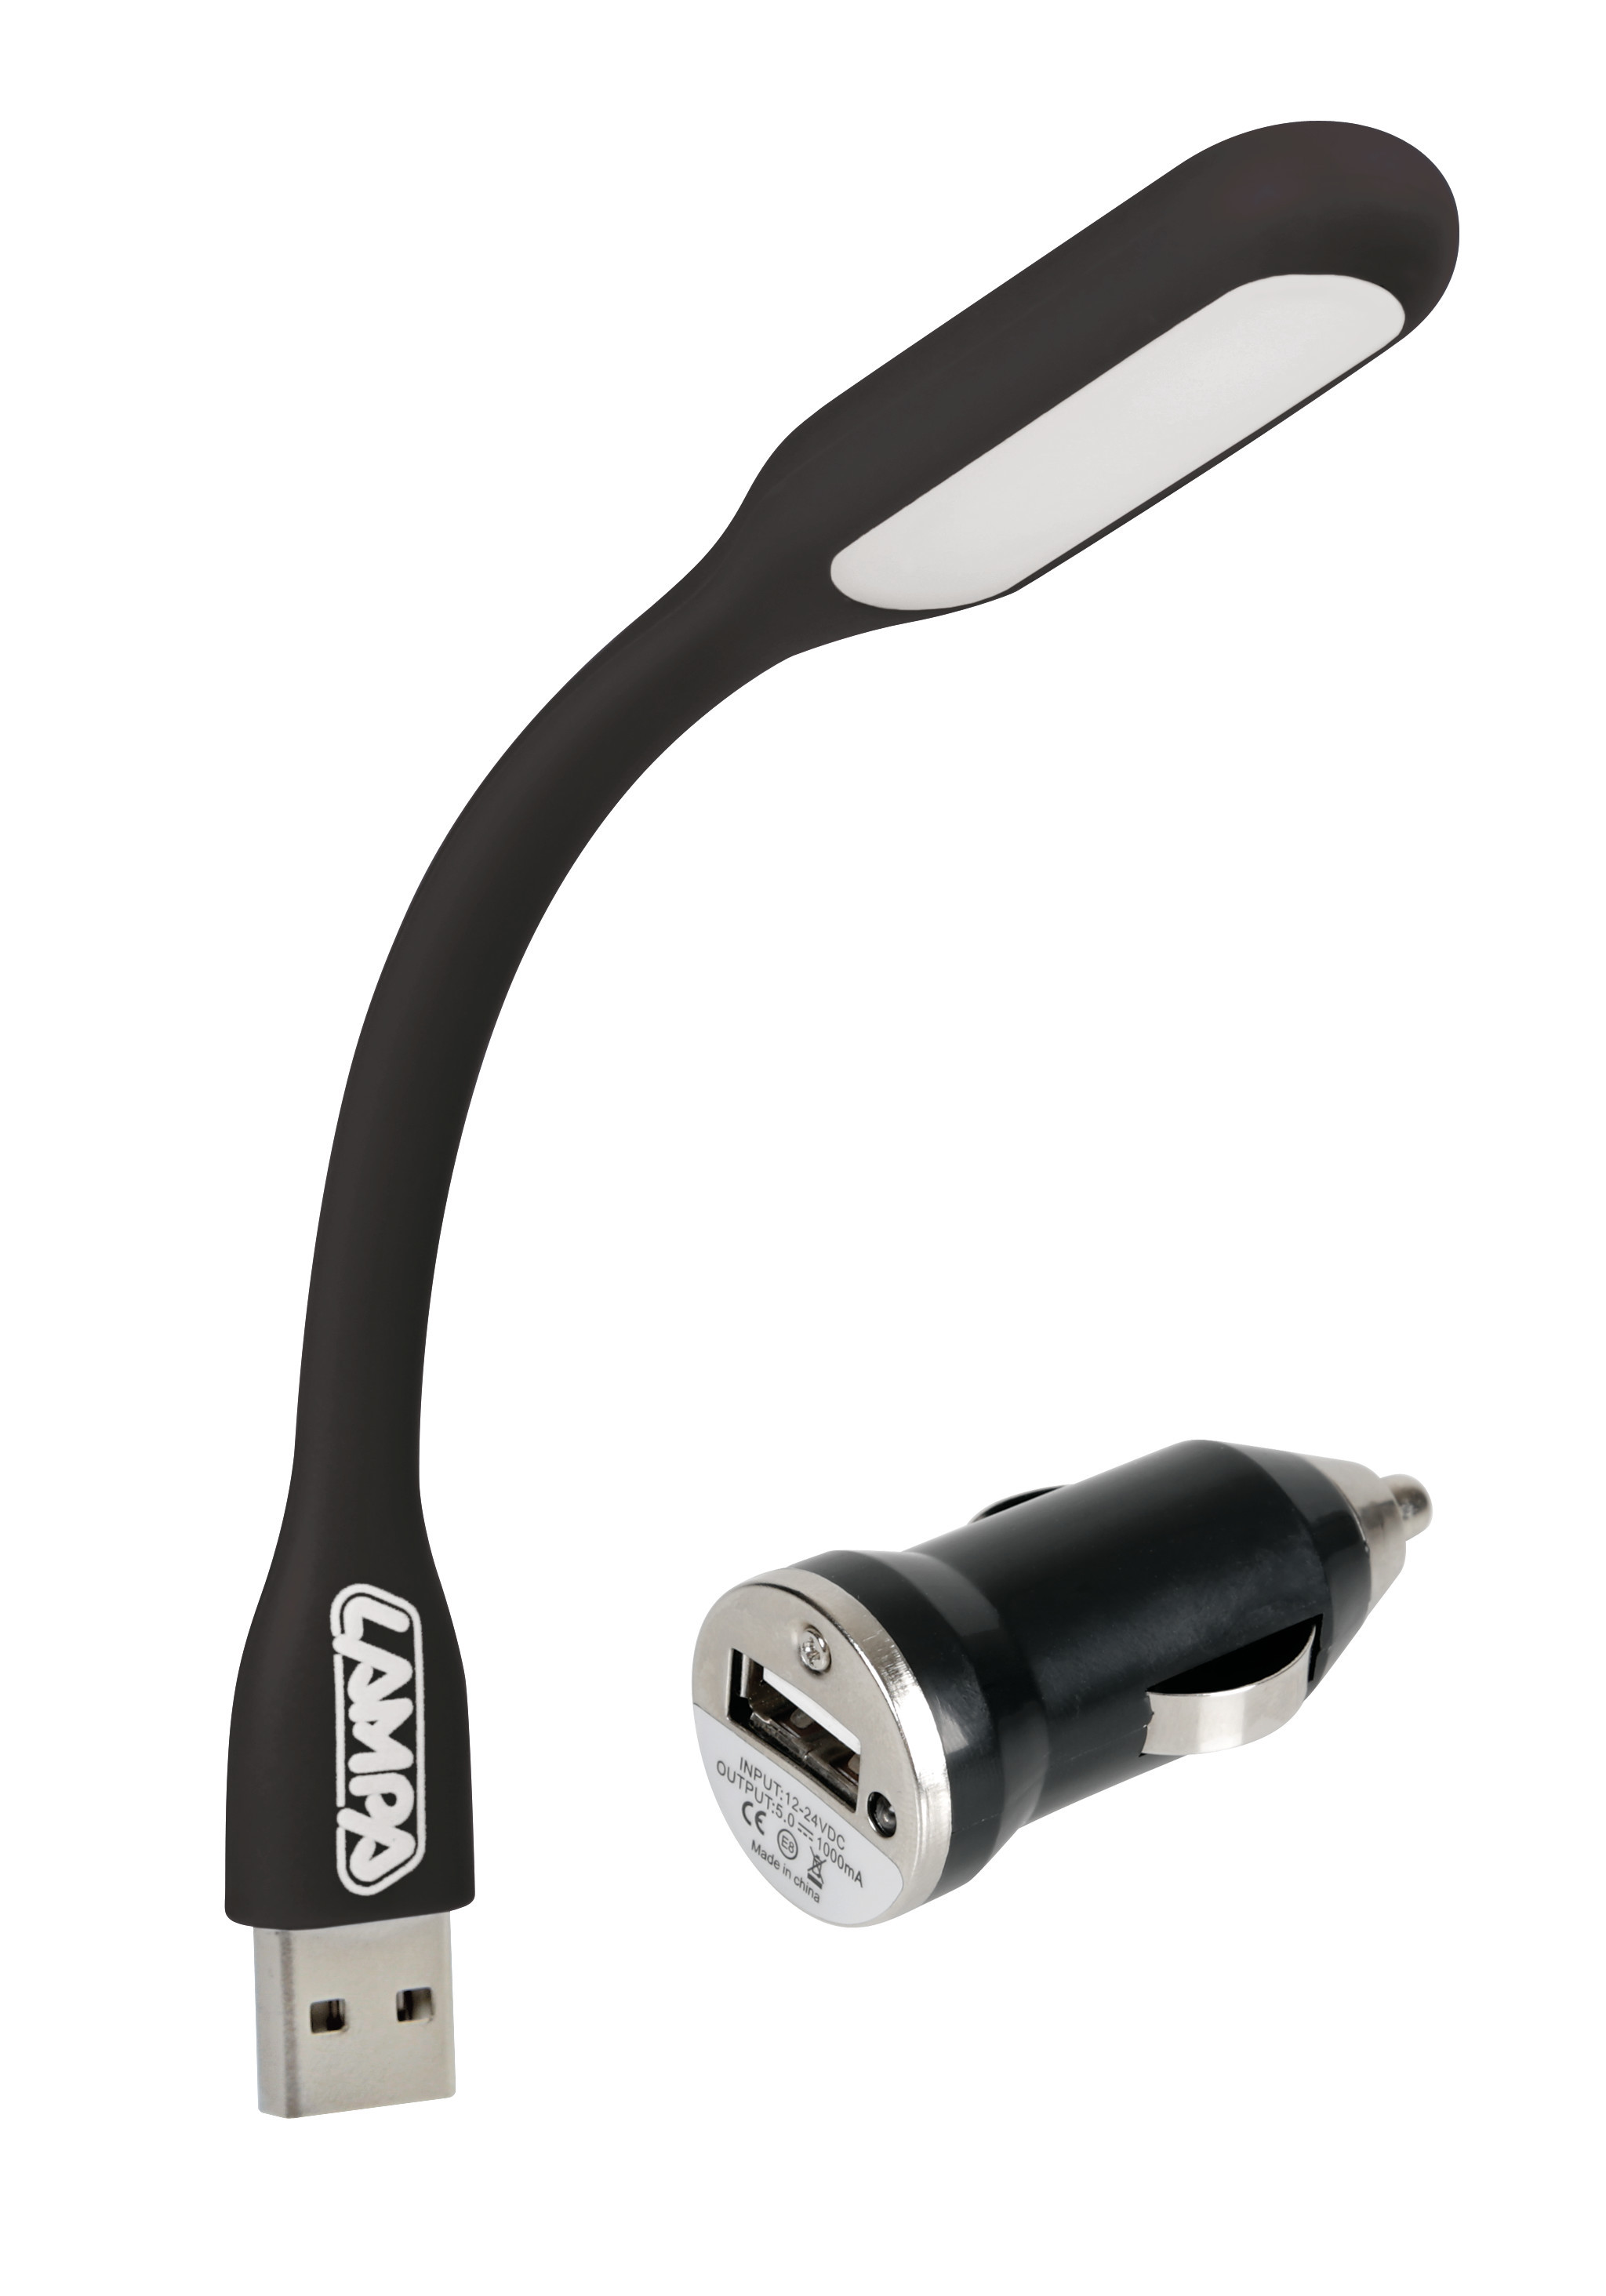 COB-LED flexible light + USB charger 12/24V thumb